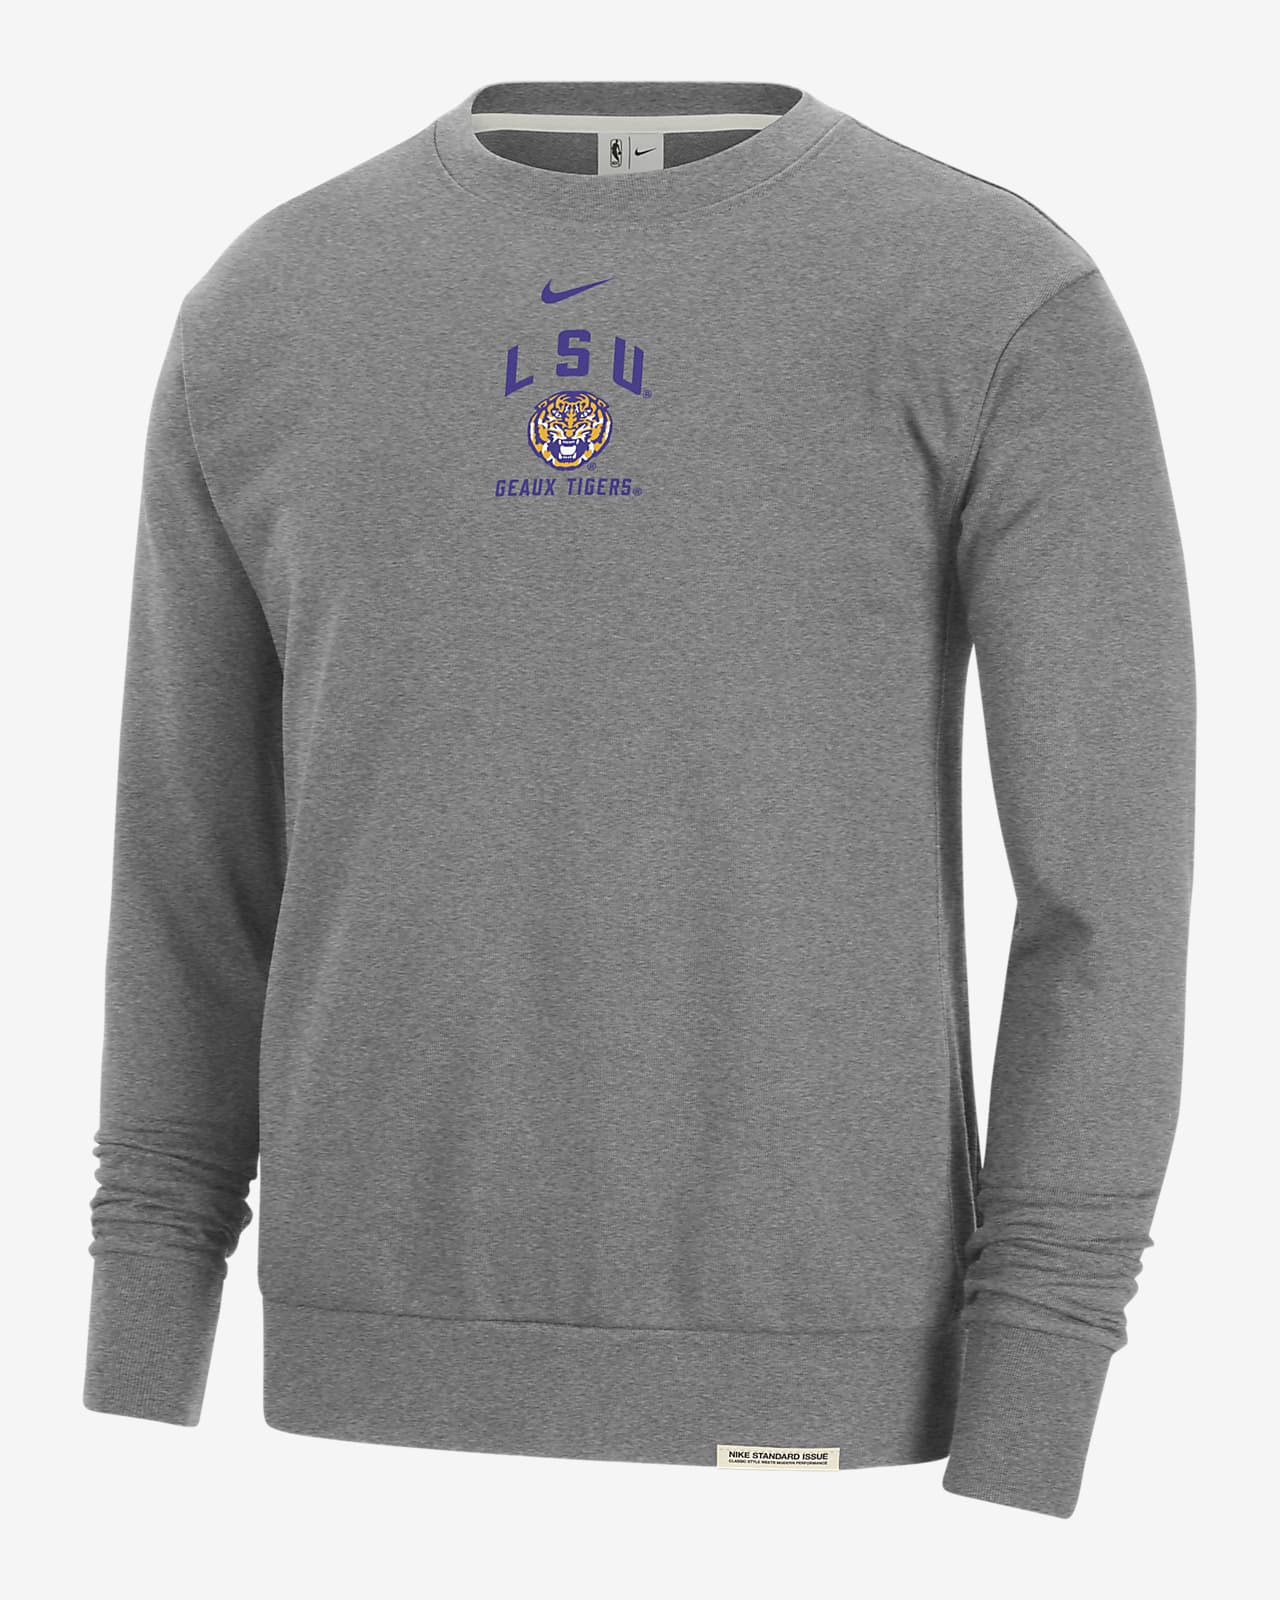 LSU Standard Issue Men's Nike College Fleece Crew-Neck Sweatshirt